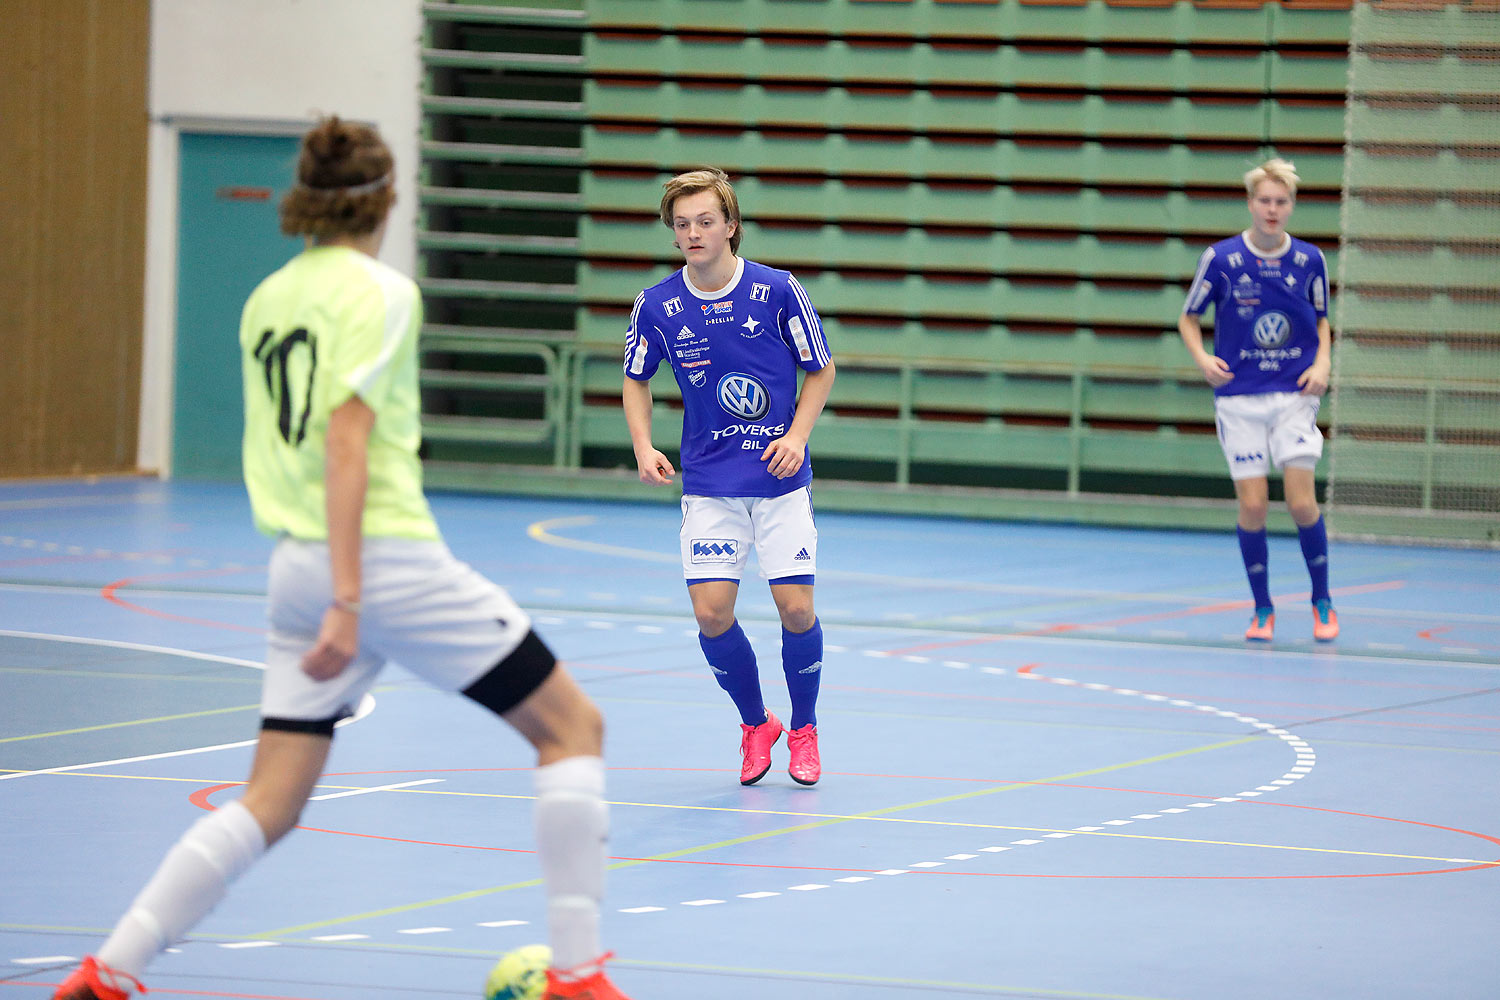 Skövde Futsalcup Herrjuniorer Näsets SK Vinröd-IFK Falköping FF,herr,Arena Skövde,Skövde,Sverige,Skövde Futsalcup 2016,Futsal,2016,141768